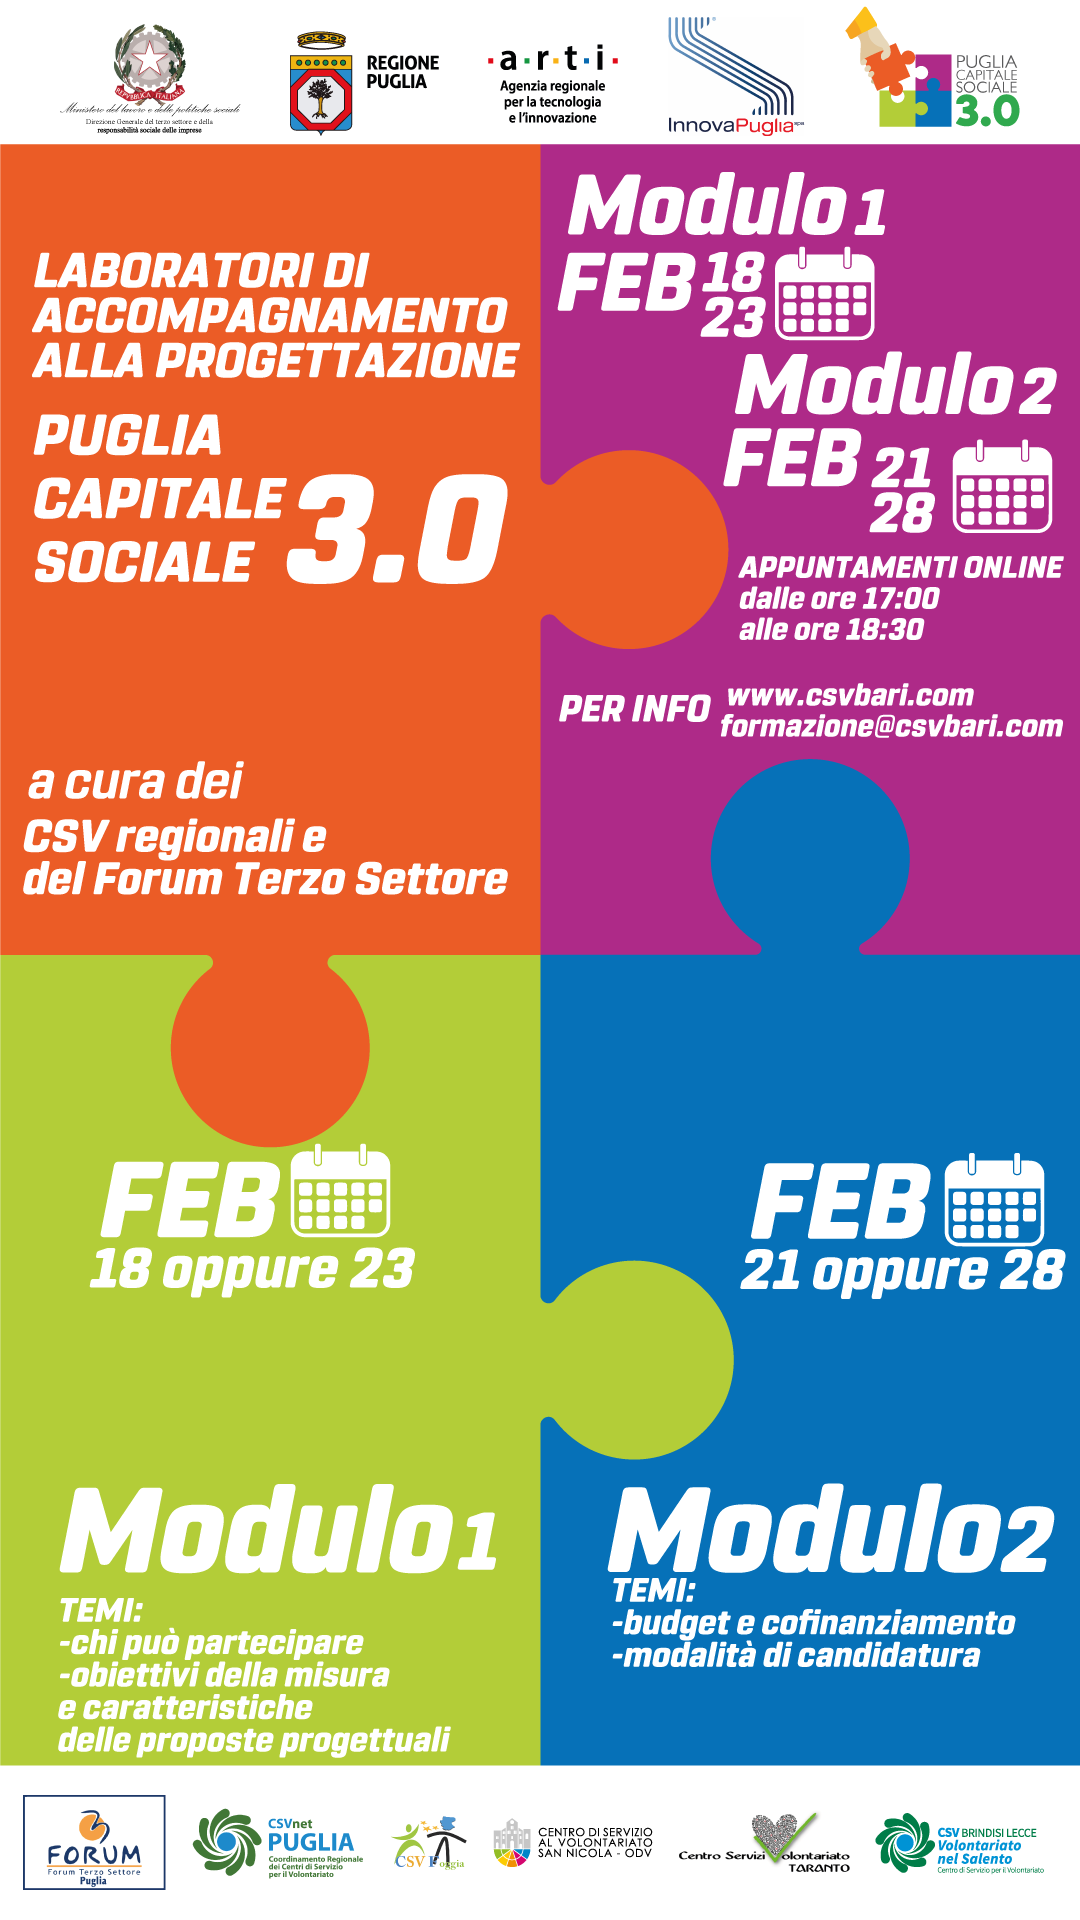 Galleria Iniziano domani i laboratori di accompagnamento alla progettazione  “Puglia Capitale Sociale 3.0” - Diapositiva 1 di 1